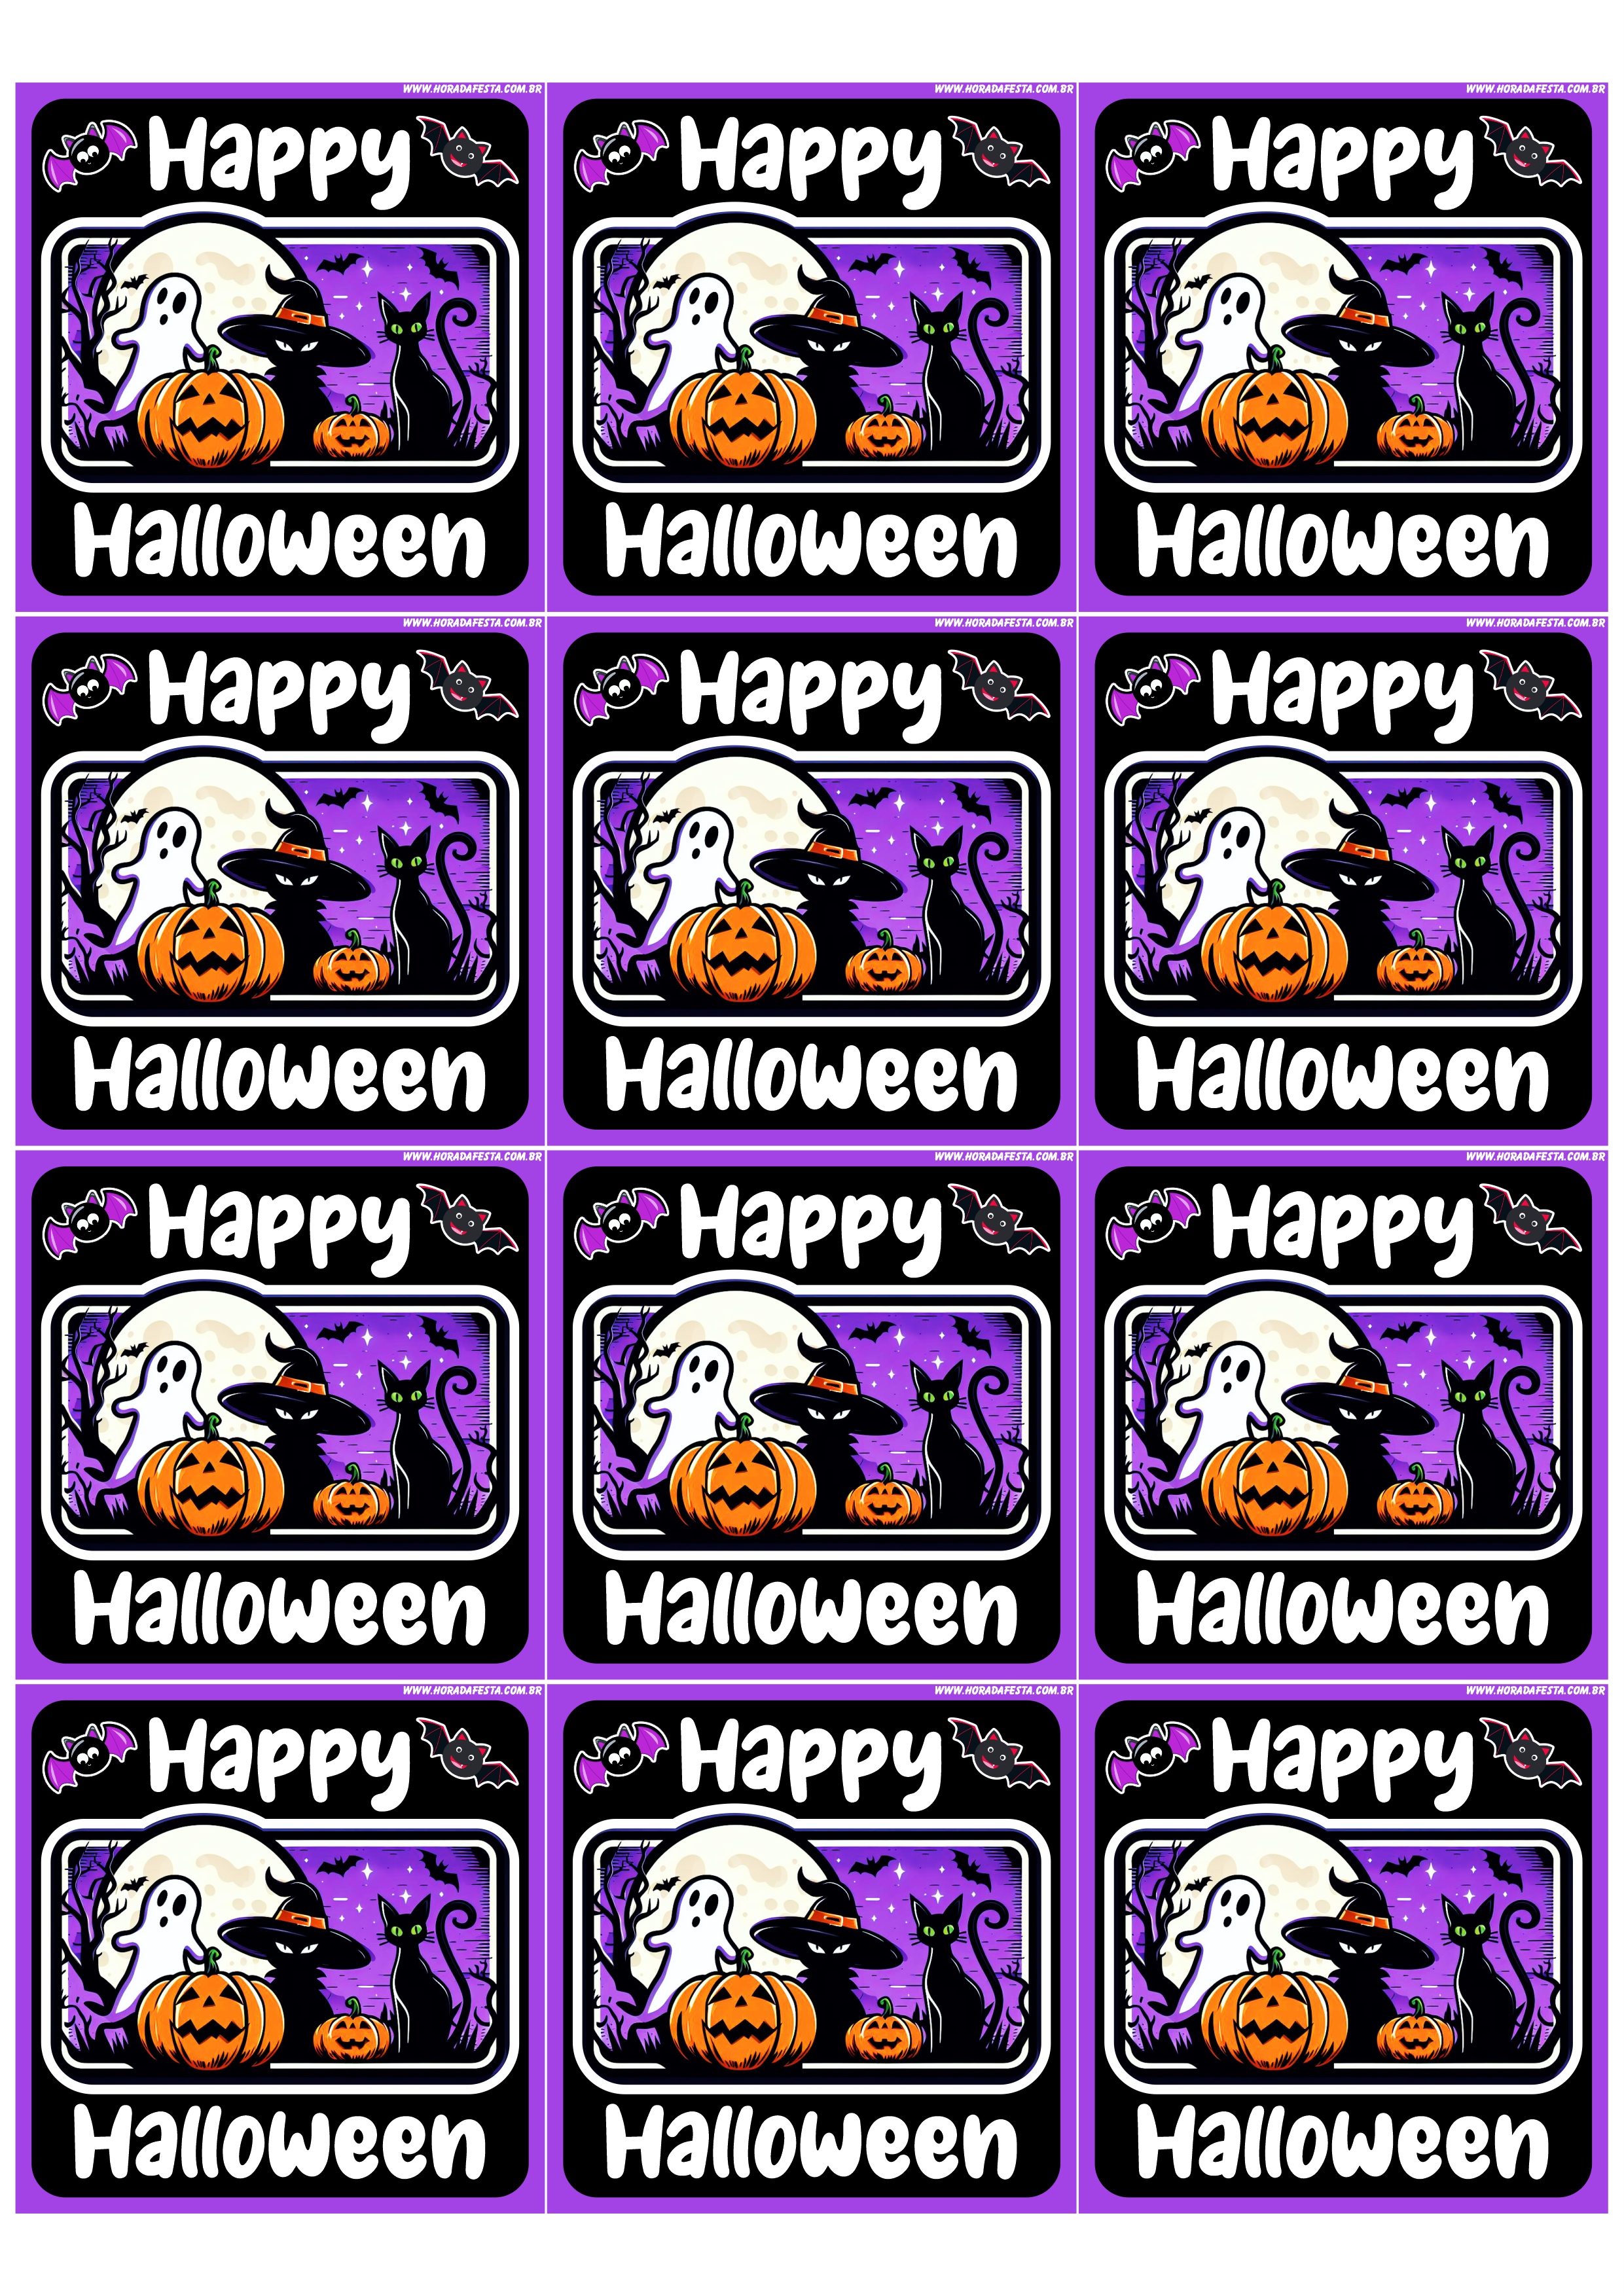 Happy Halloween adesivo tag sticker painel decoração grátis de festa artigos de papelaria artes gráficas 12 imagens png